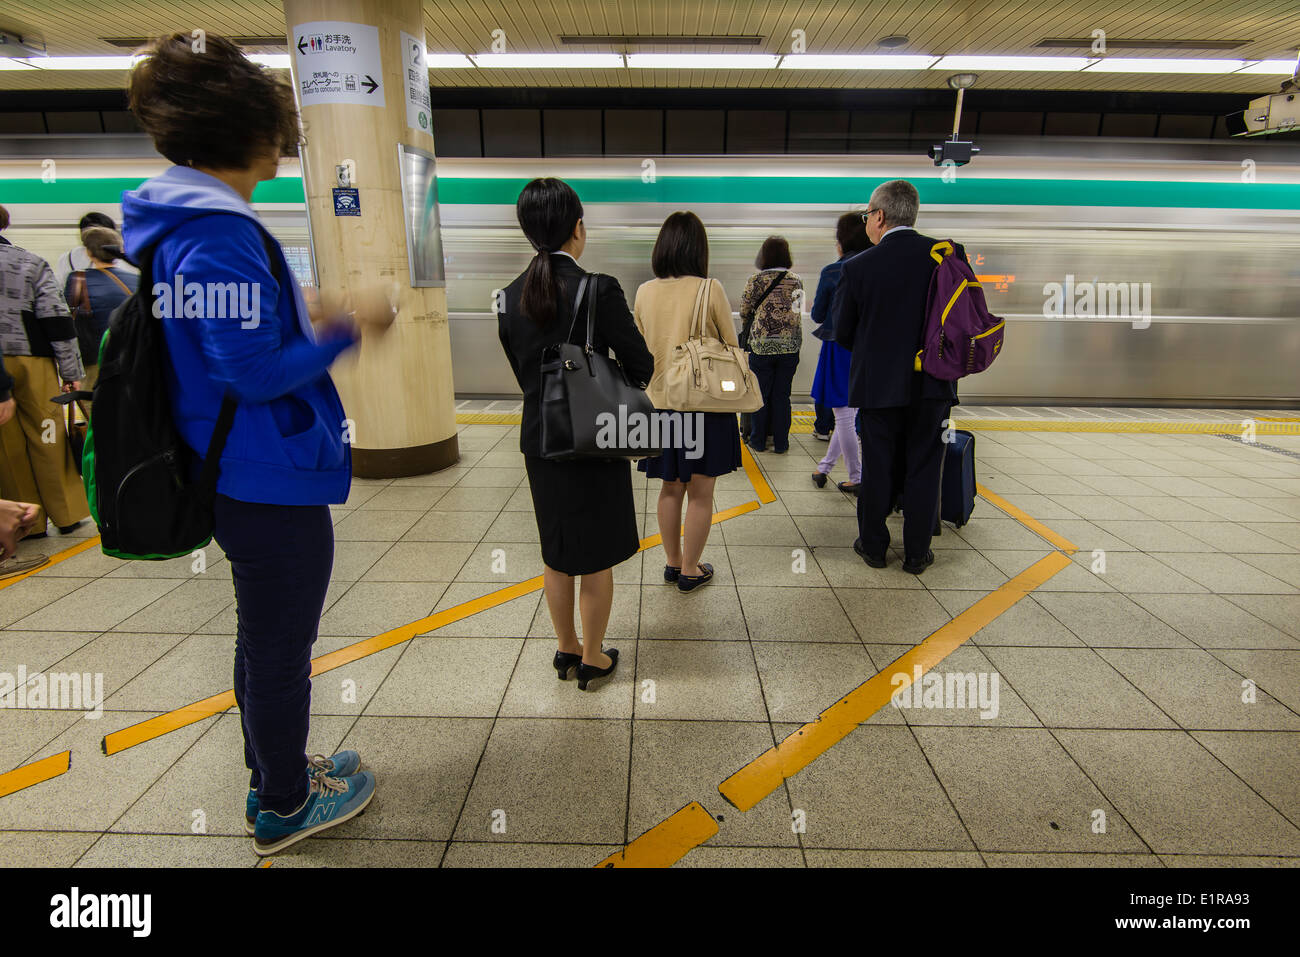 La gente sulla linea di attesa per il treno della metropolitana, Kyoto, Giappone Foto Stock